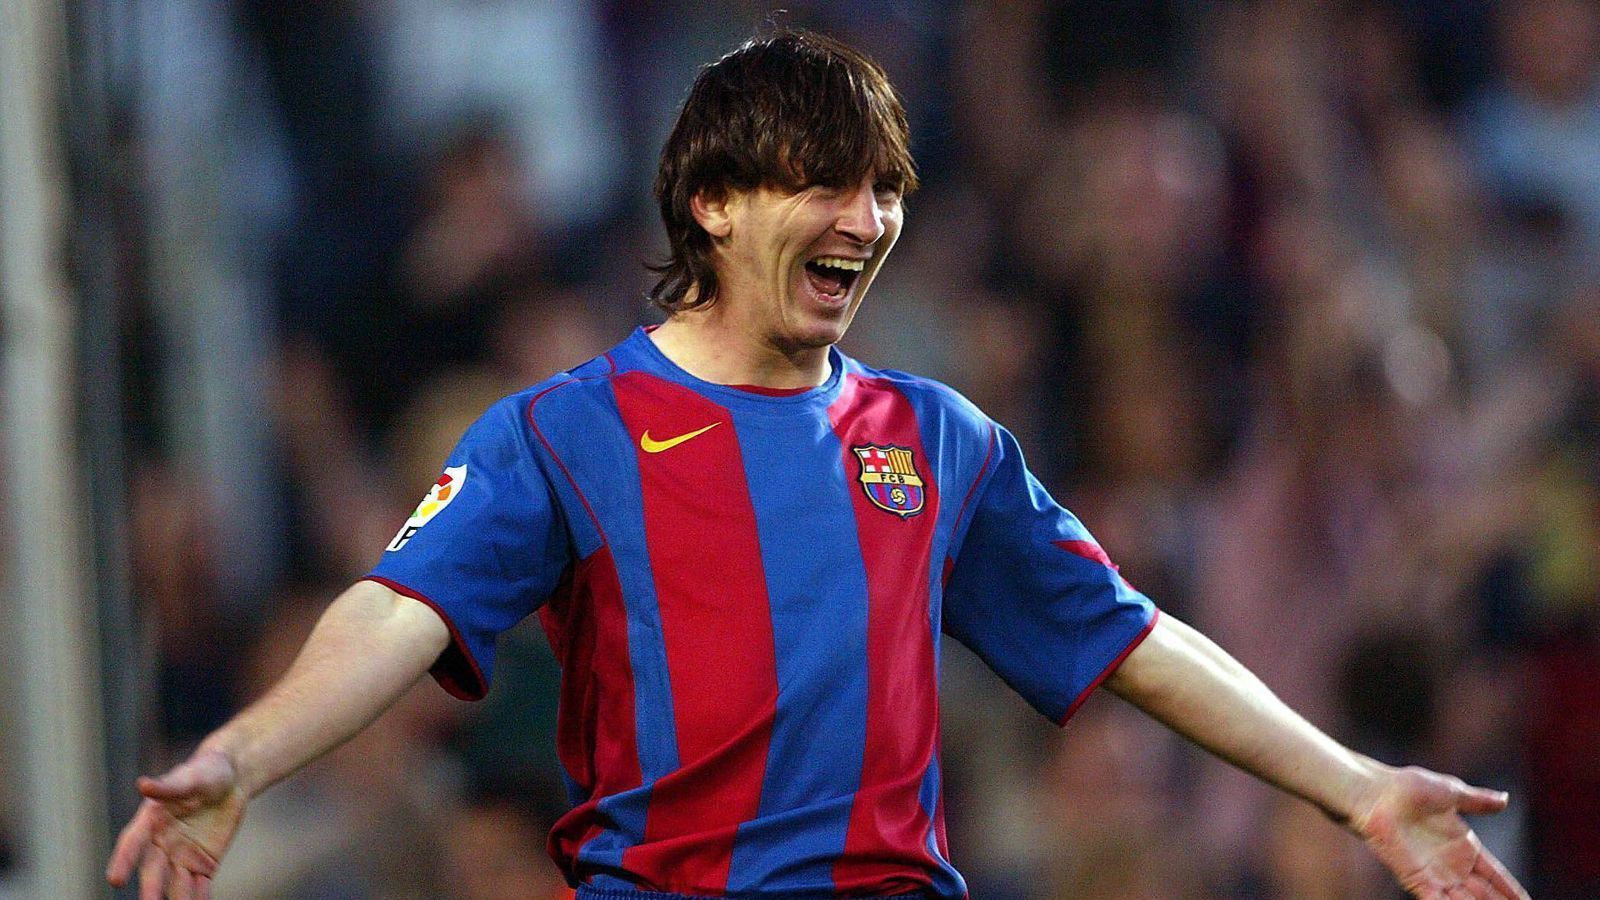 
                <strong>2004: Debüt für die 1. Mannschaft des FC Barcelona</strong><br>
                Am 16. Oktober 2004 gibt Messi sein Profi-Debüt für die 1. Mannschaft des FC Barcelona. Im Derby gegen Espanyol Barcelona wechselt Frank Rijkaard das Wunderkind zum ersten Mal ein. Was folgt sind 778 Spiele und 672 Tore - damit ist Messi Rekordspieler- und Torschütze Barcas.
              